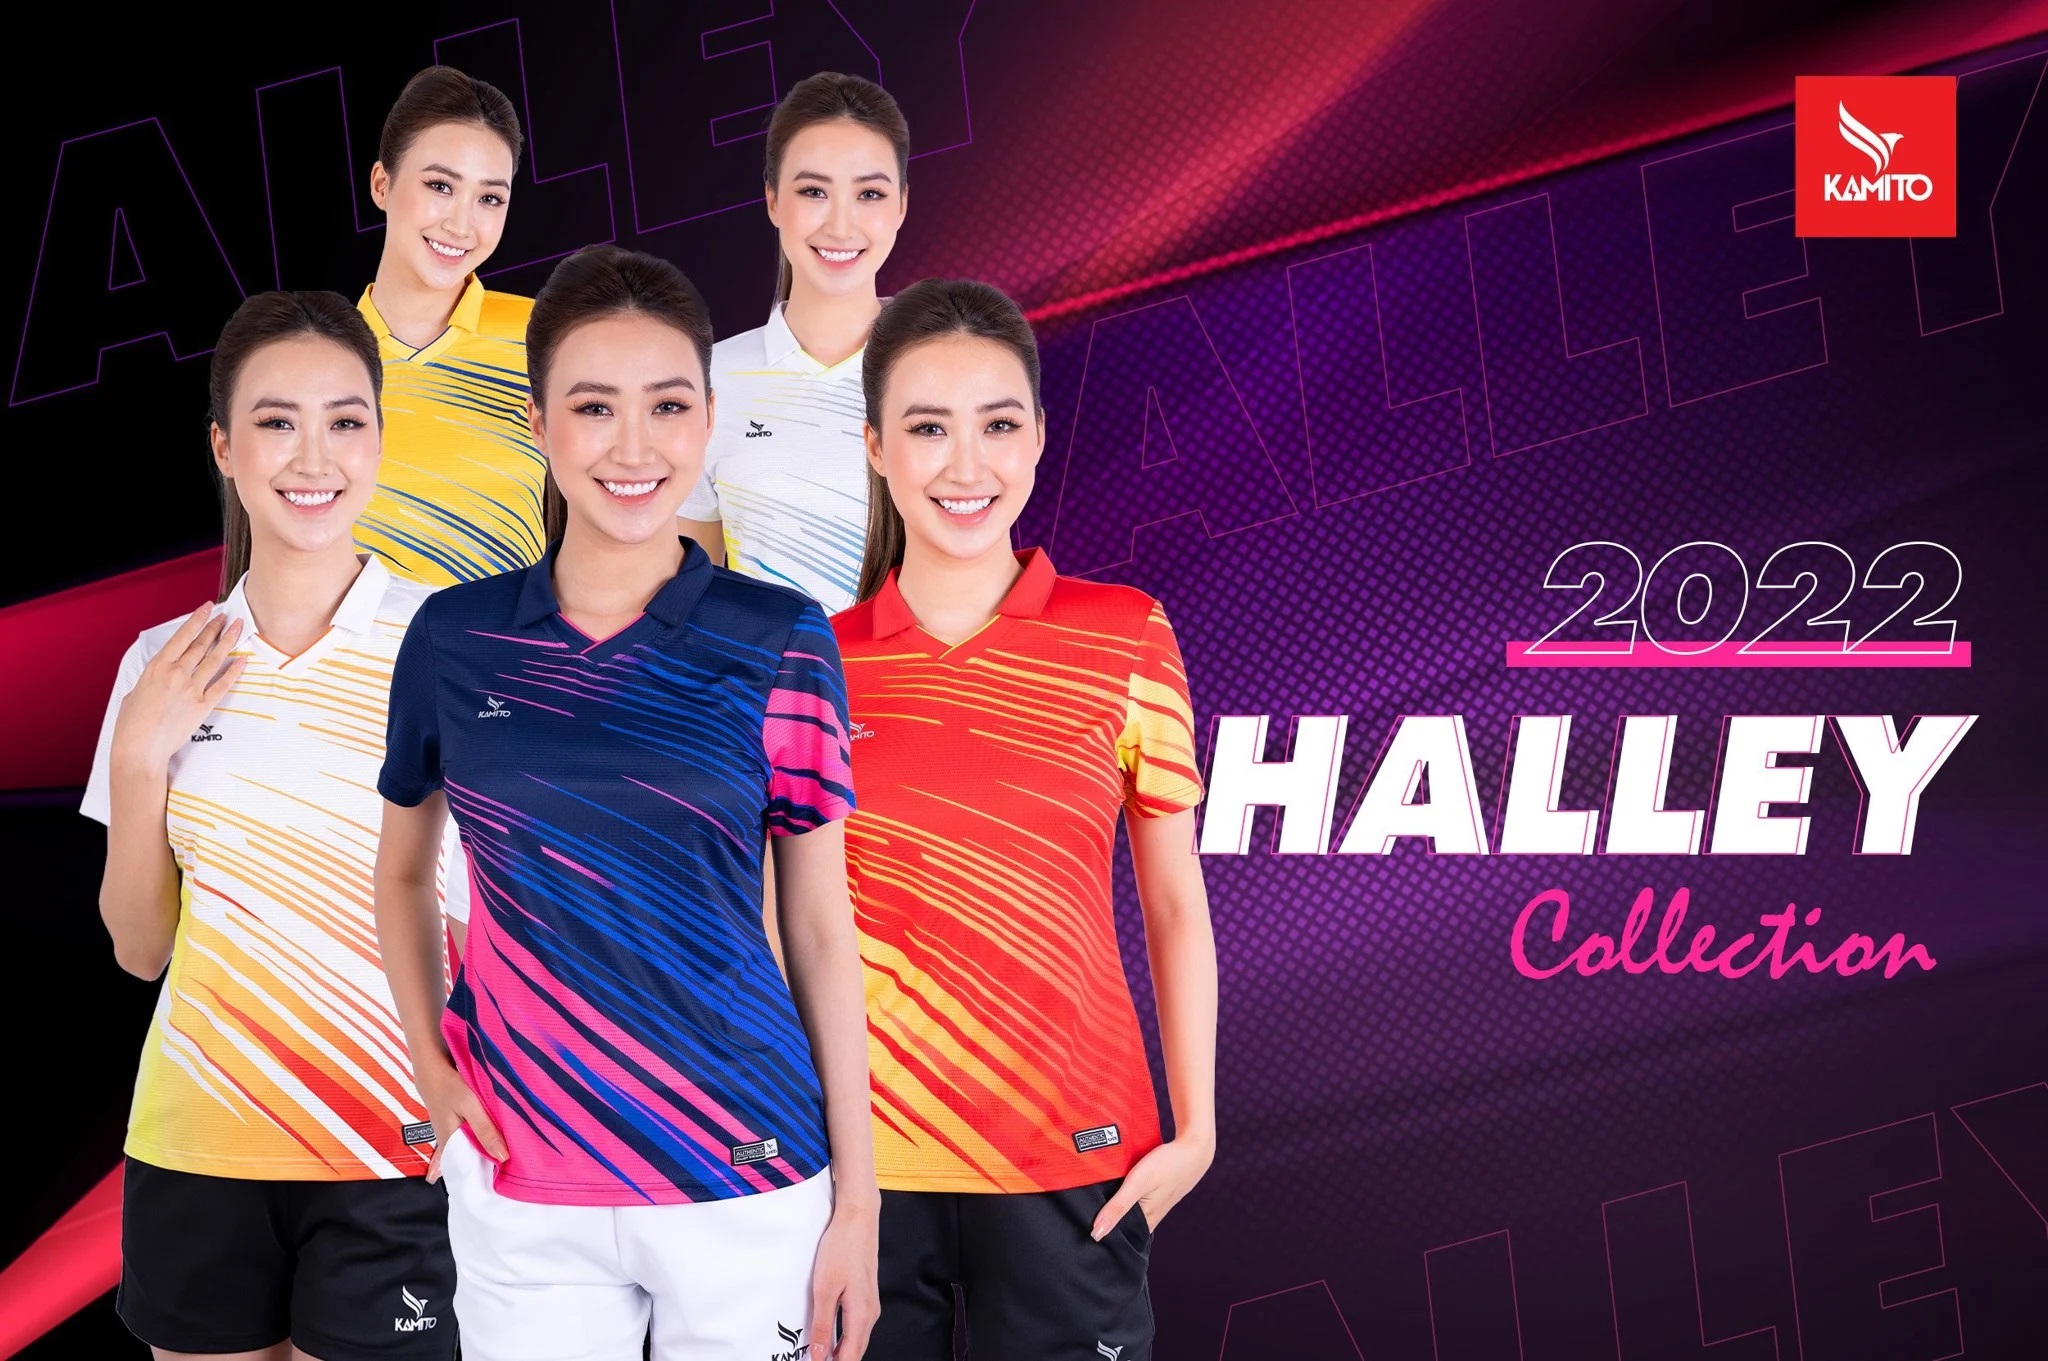 Áo thun thể thao / áo phông Kamito POLO NỮ HALLEY (chính hãng)